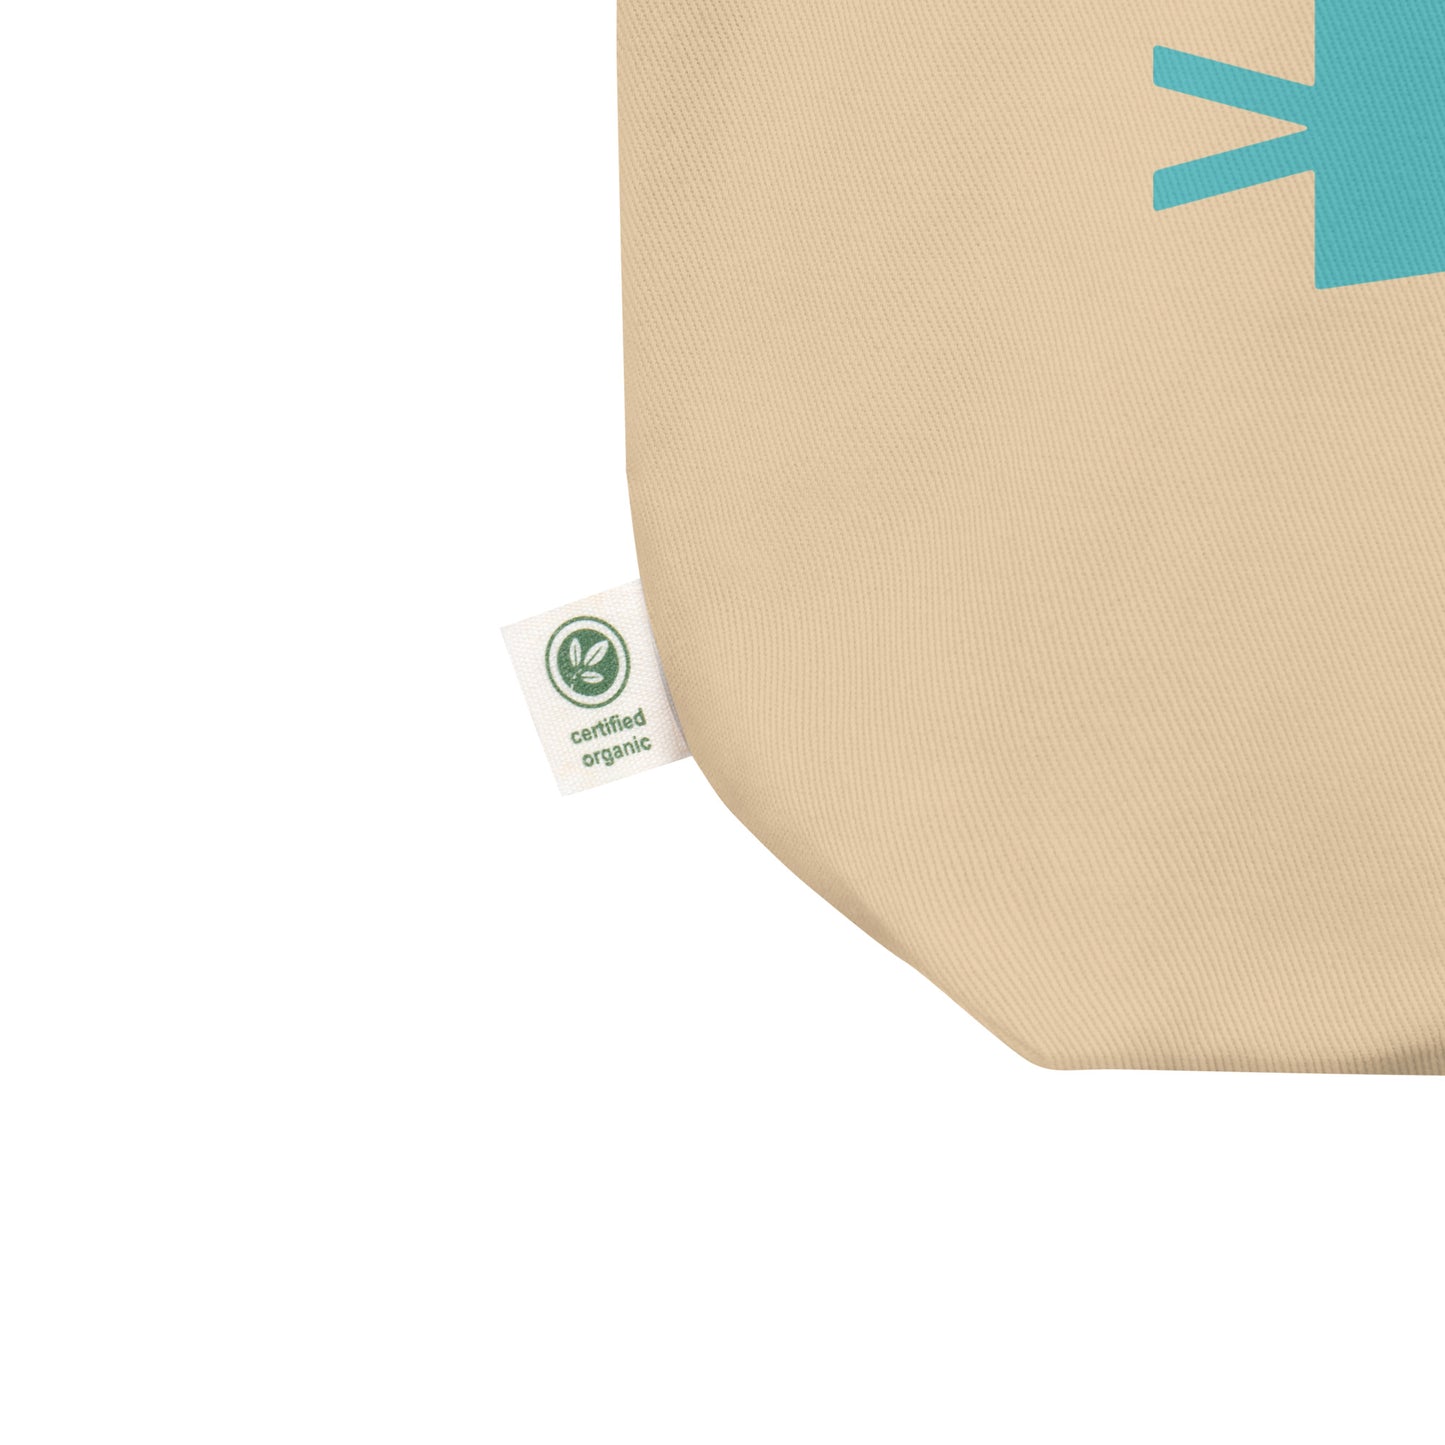 Cool Travel Gift Organic Tote Bag - Viking Blue • YQR Regina • YHM Designs - Image 02